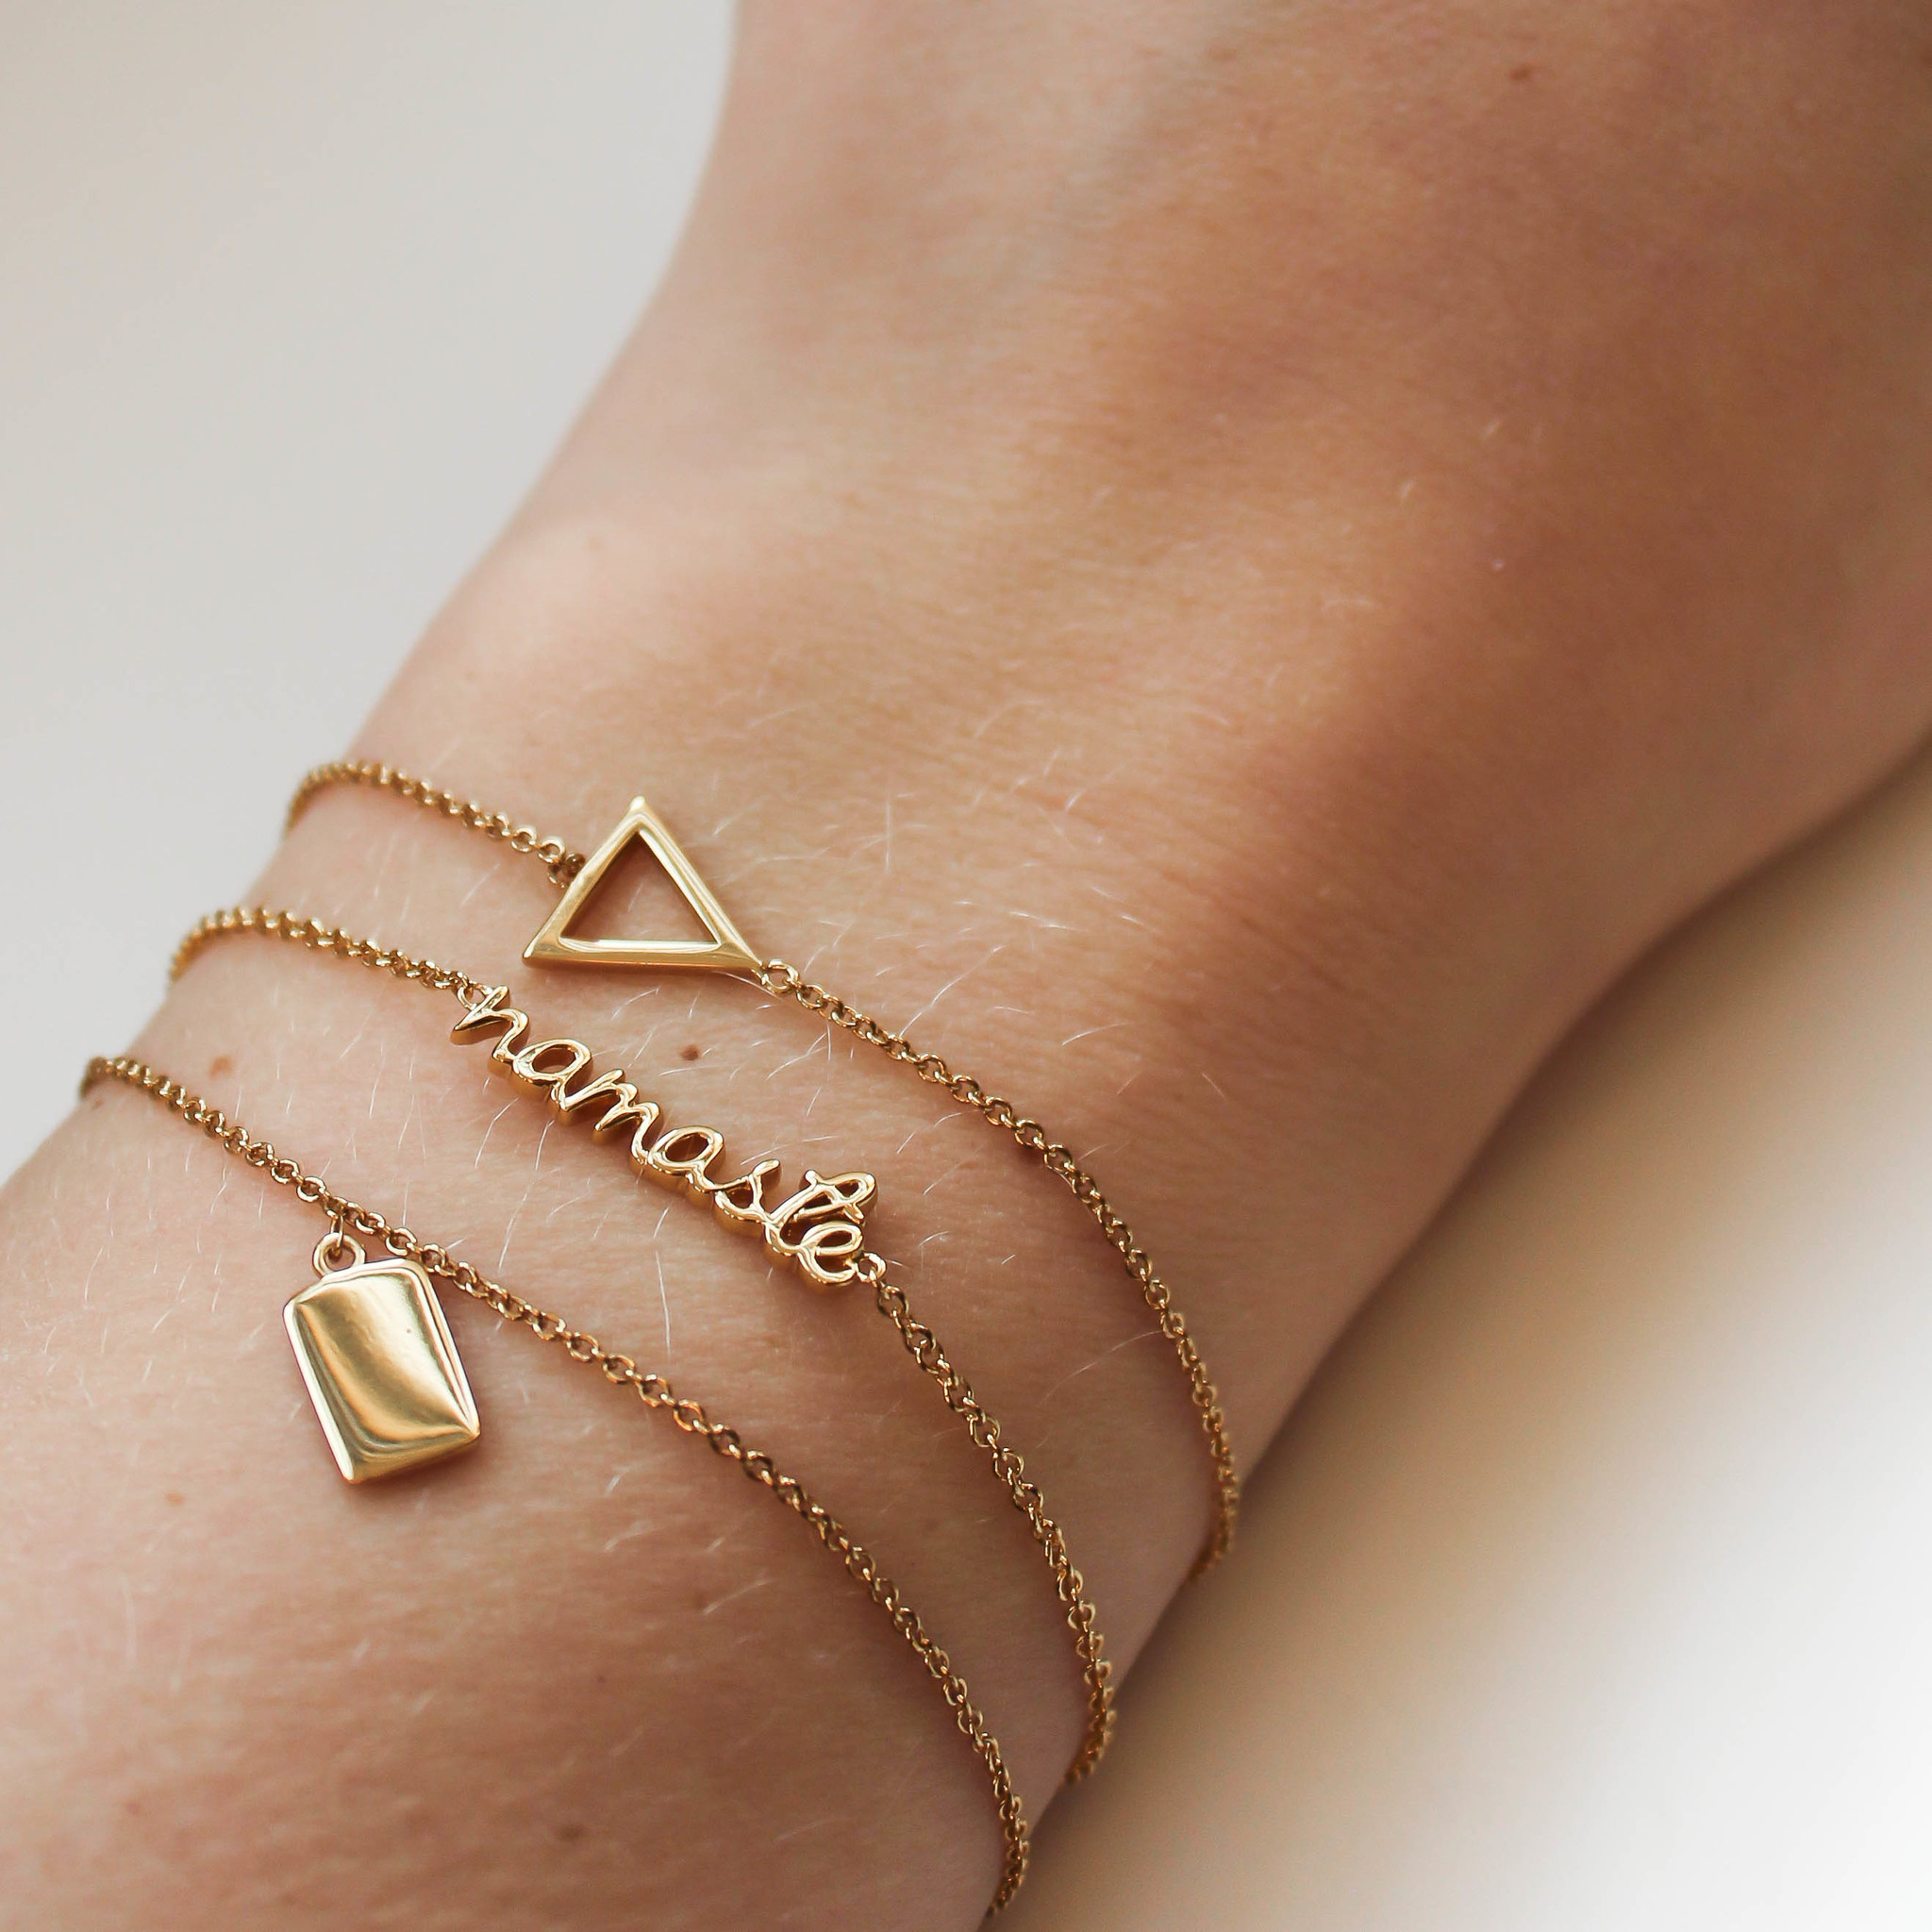 Triangle bracelet, women bracelet with silver Triangle charm, minimalist  geometric jewelry, black cord, birthday gift for her,black bracelet – Shani  & Adi Jewelry